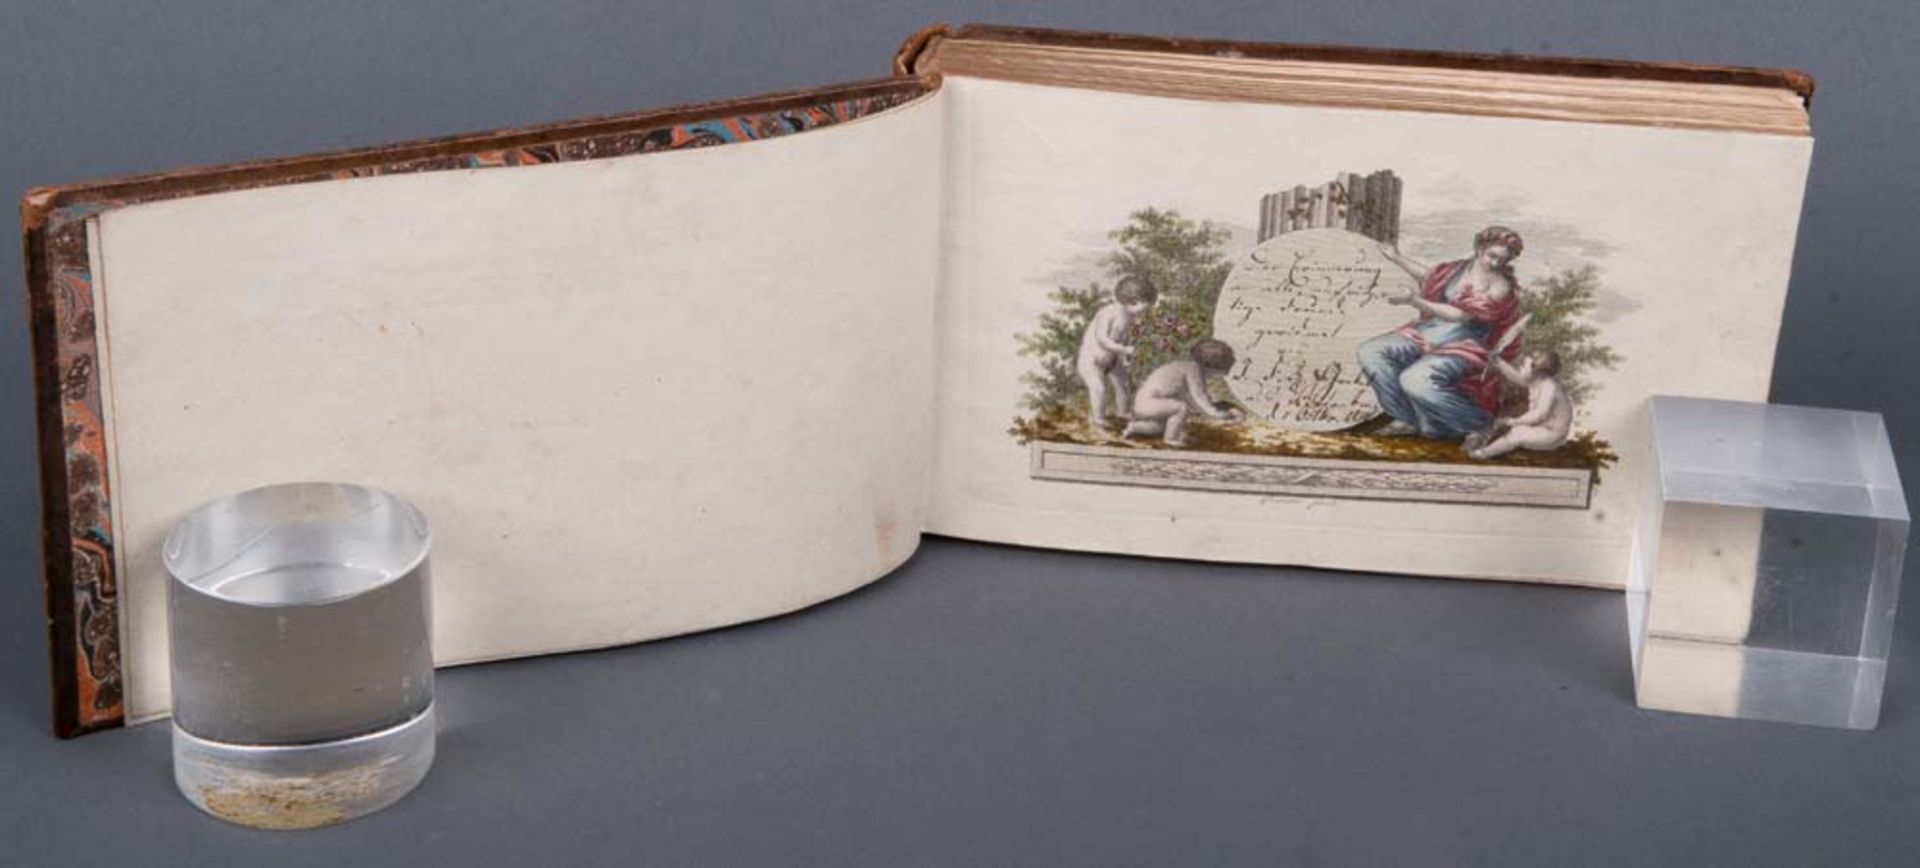 Tagebuch mit Eintragungen von 1815 bis 1833. Goldgeprägter Lederumband. - Bild 2 aus 3